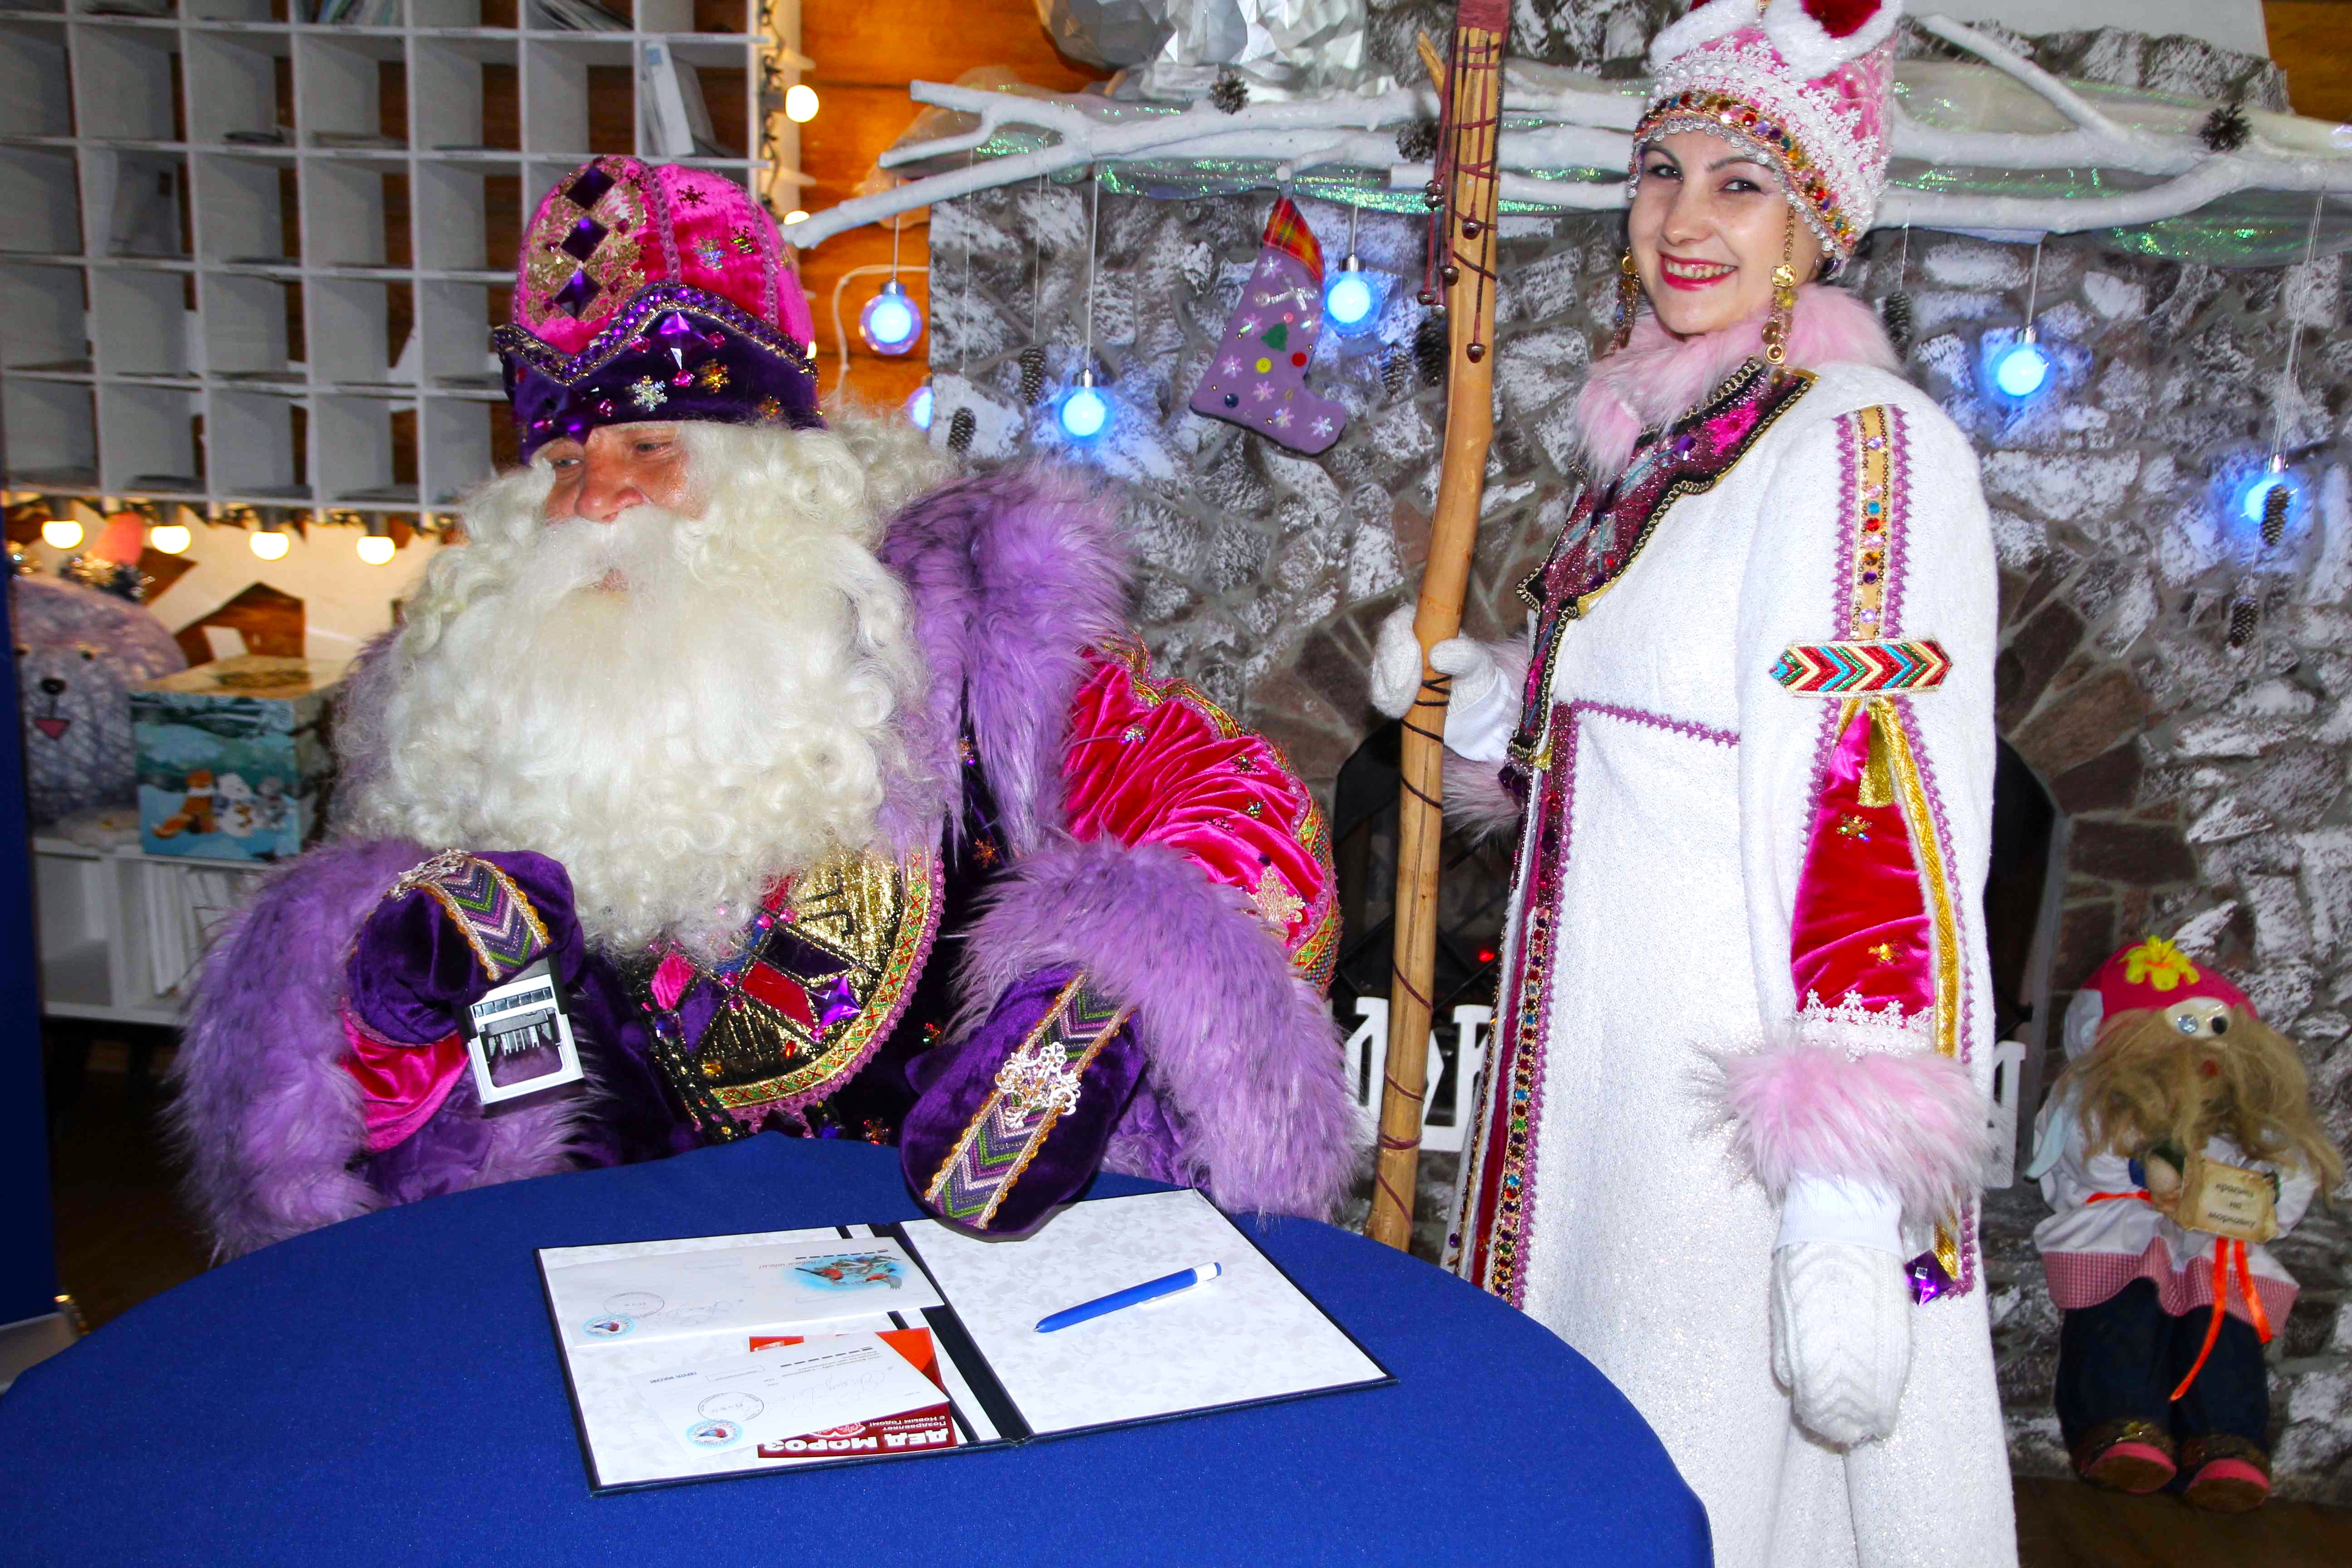 Почта России доставила 172 000 писем Деду Морозу.